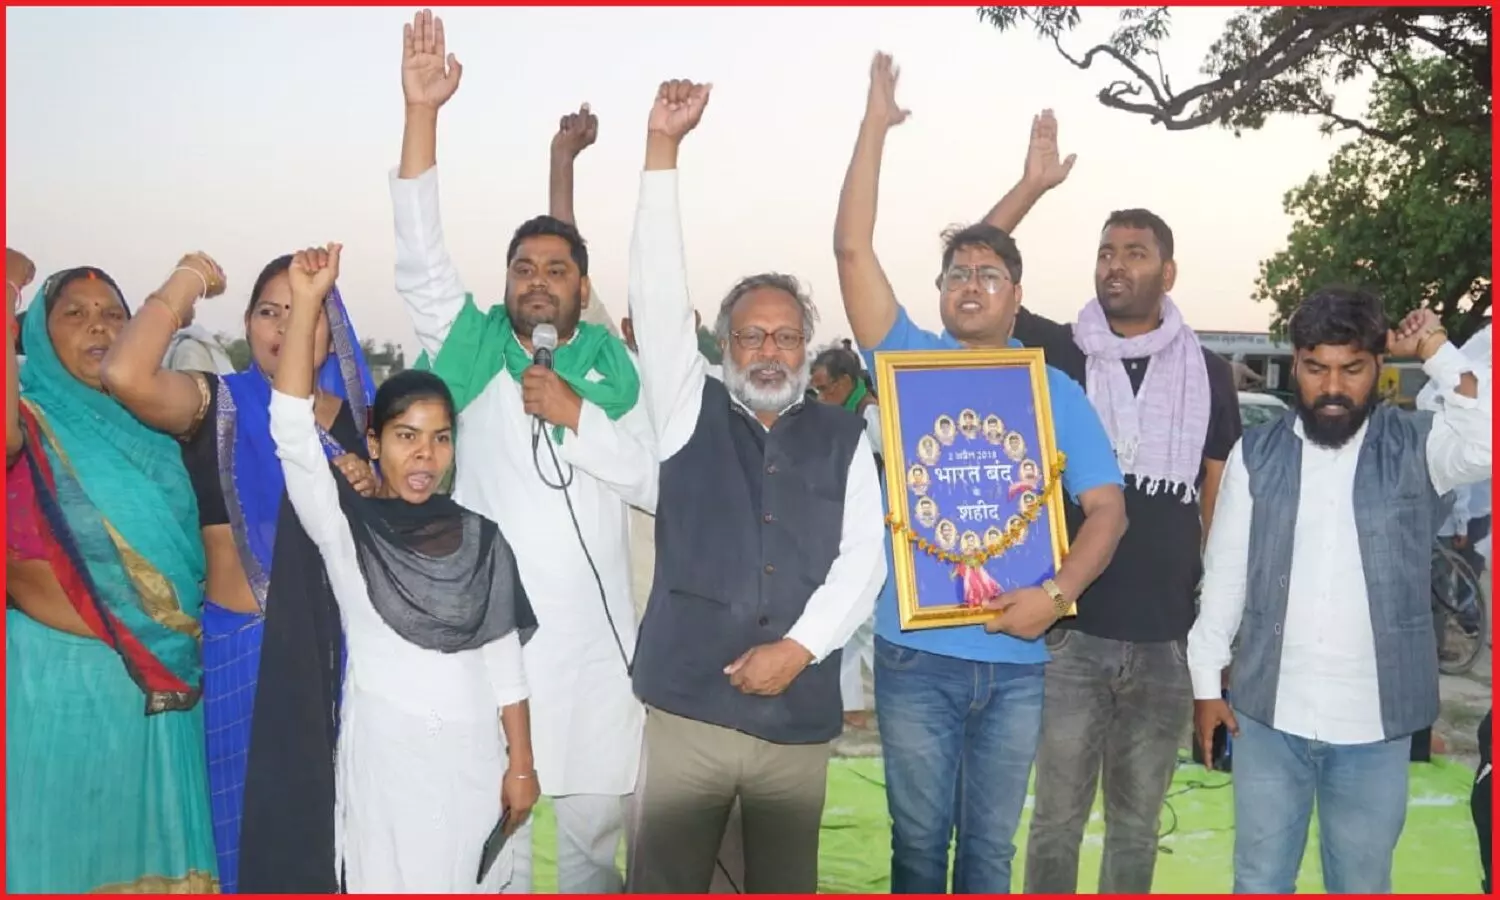 2 अप्रैल 2018 को भारत बंद आंदोलन में शहीद 13 नौजवानों की याद में खिरिया बाग में श्रद्धांजलि सभा आयोजित